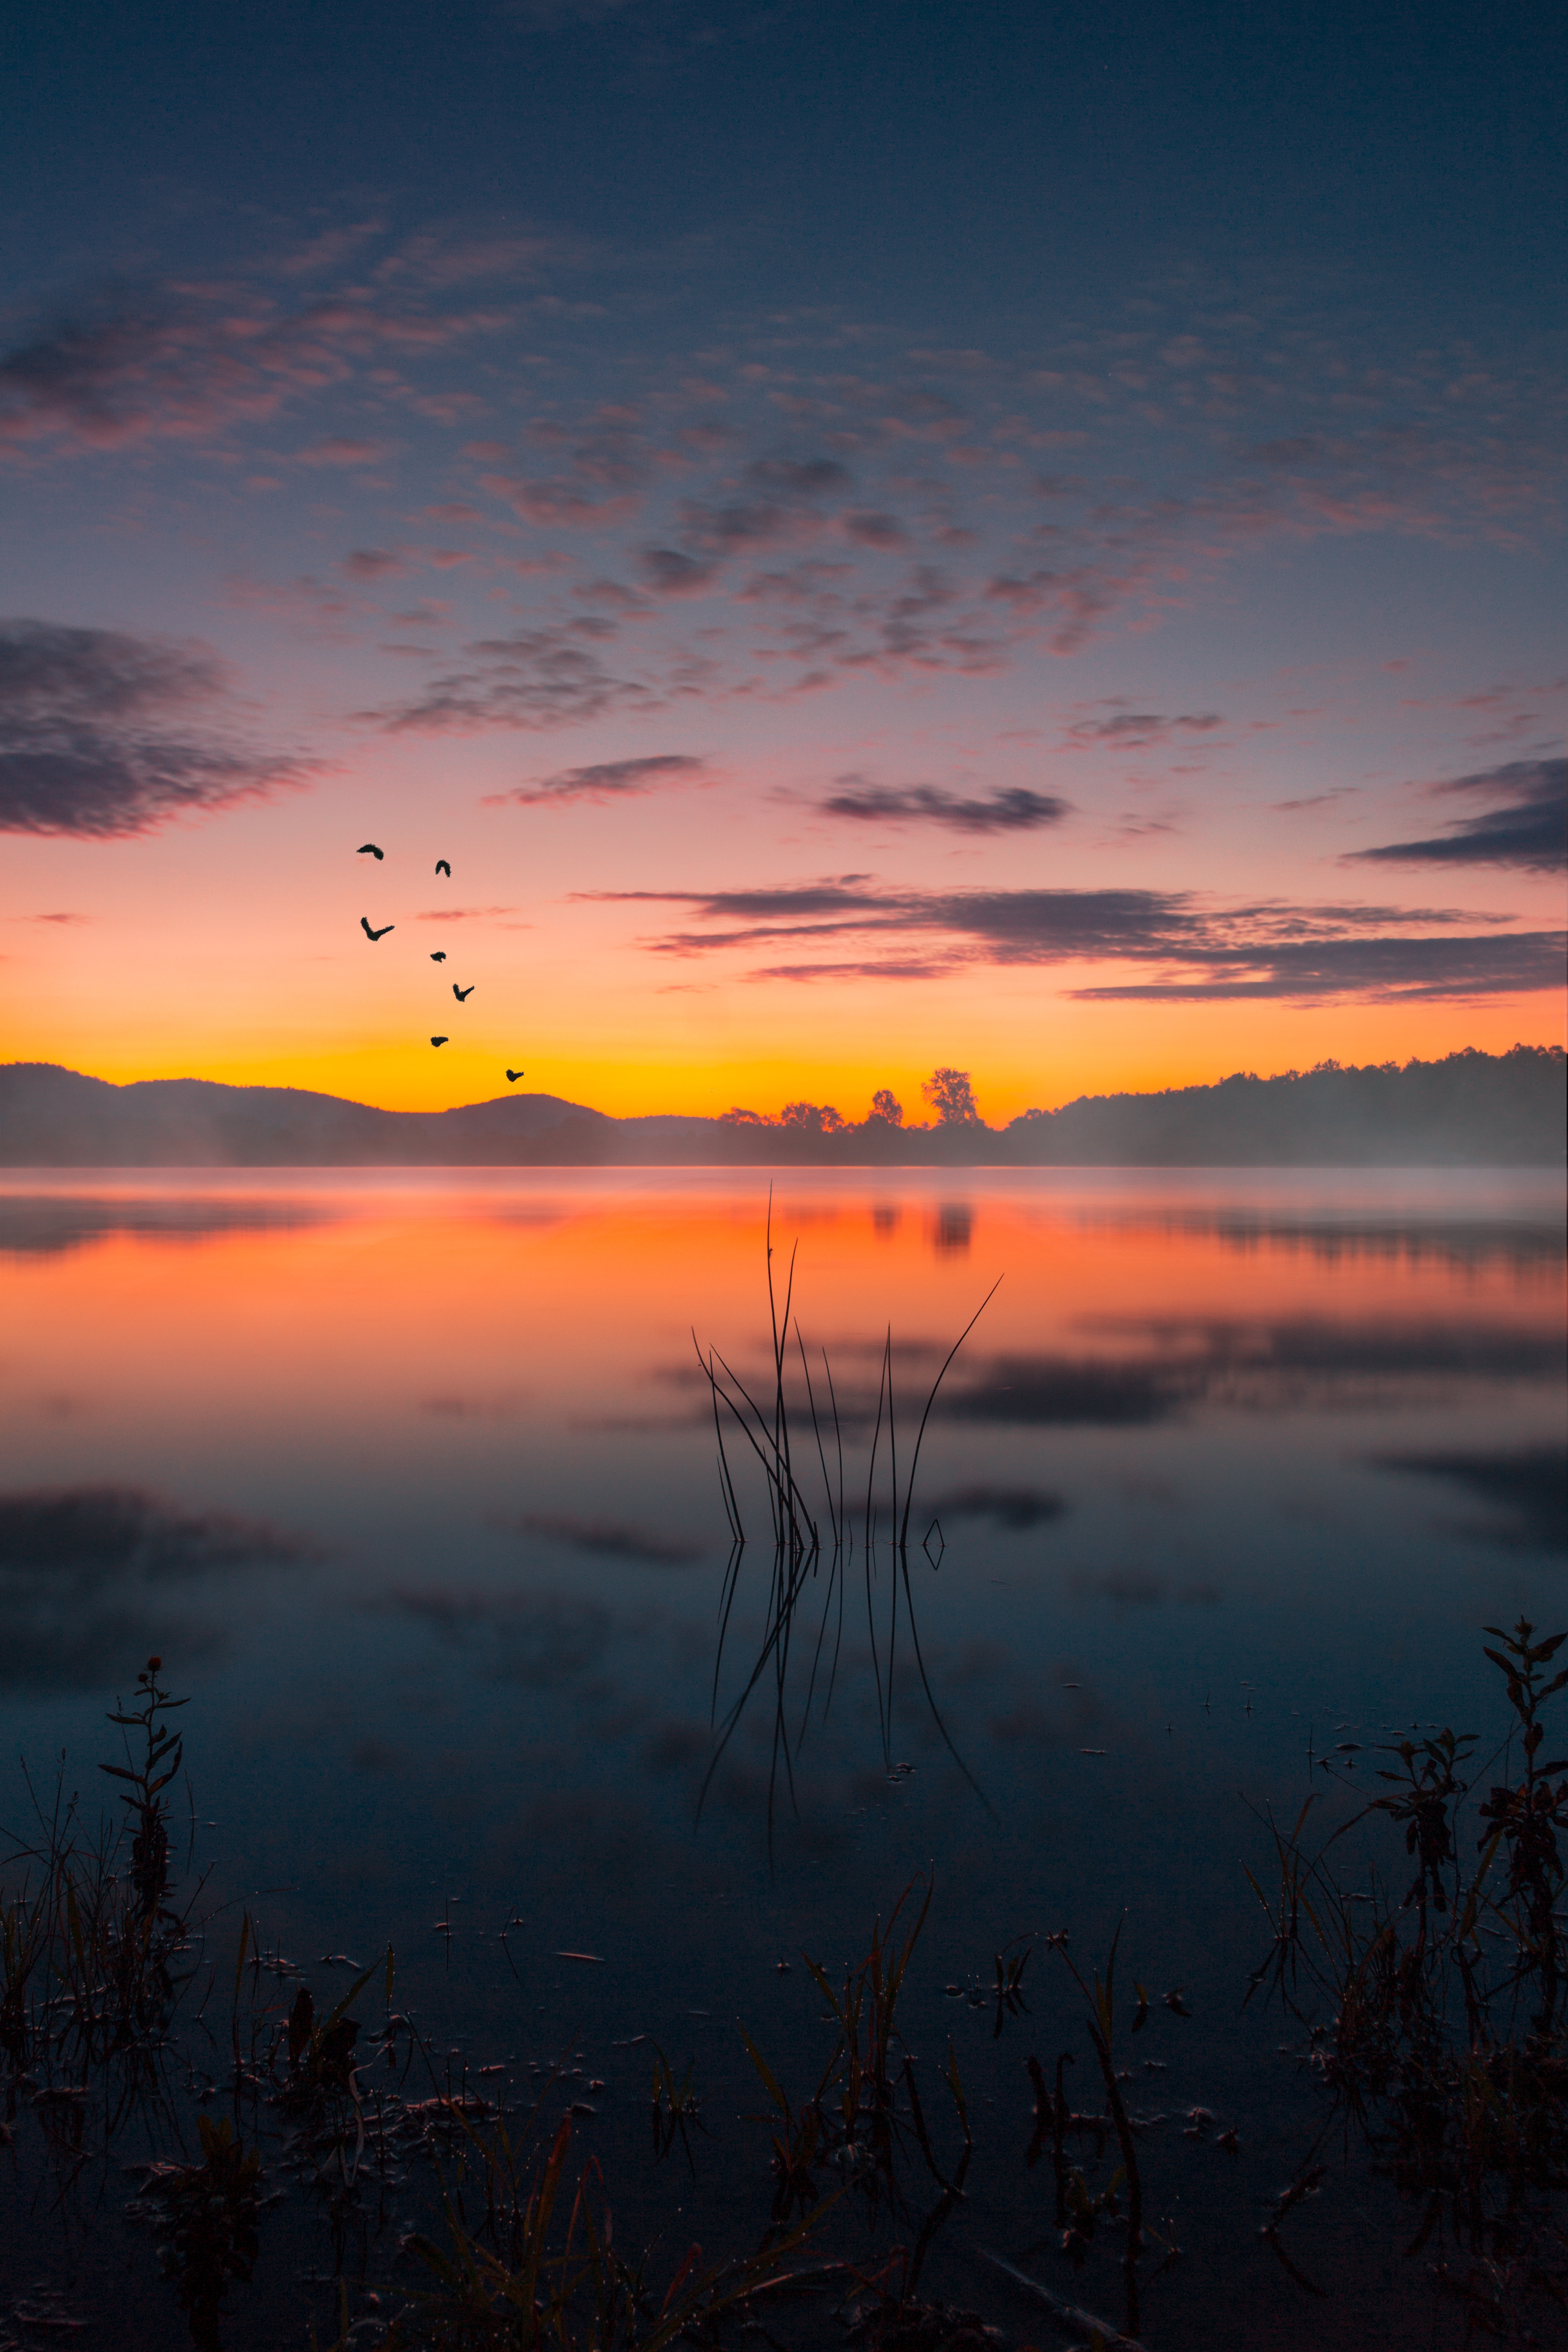 twilight, lake, landscape, nature, sunset, fog, dusk